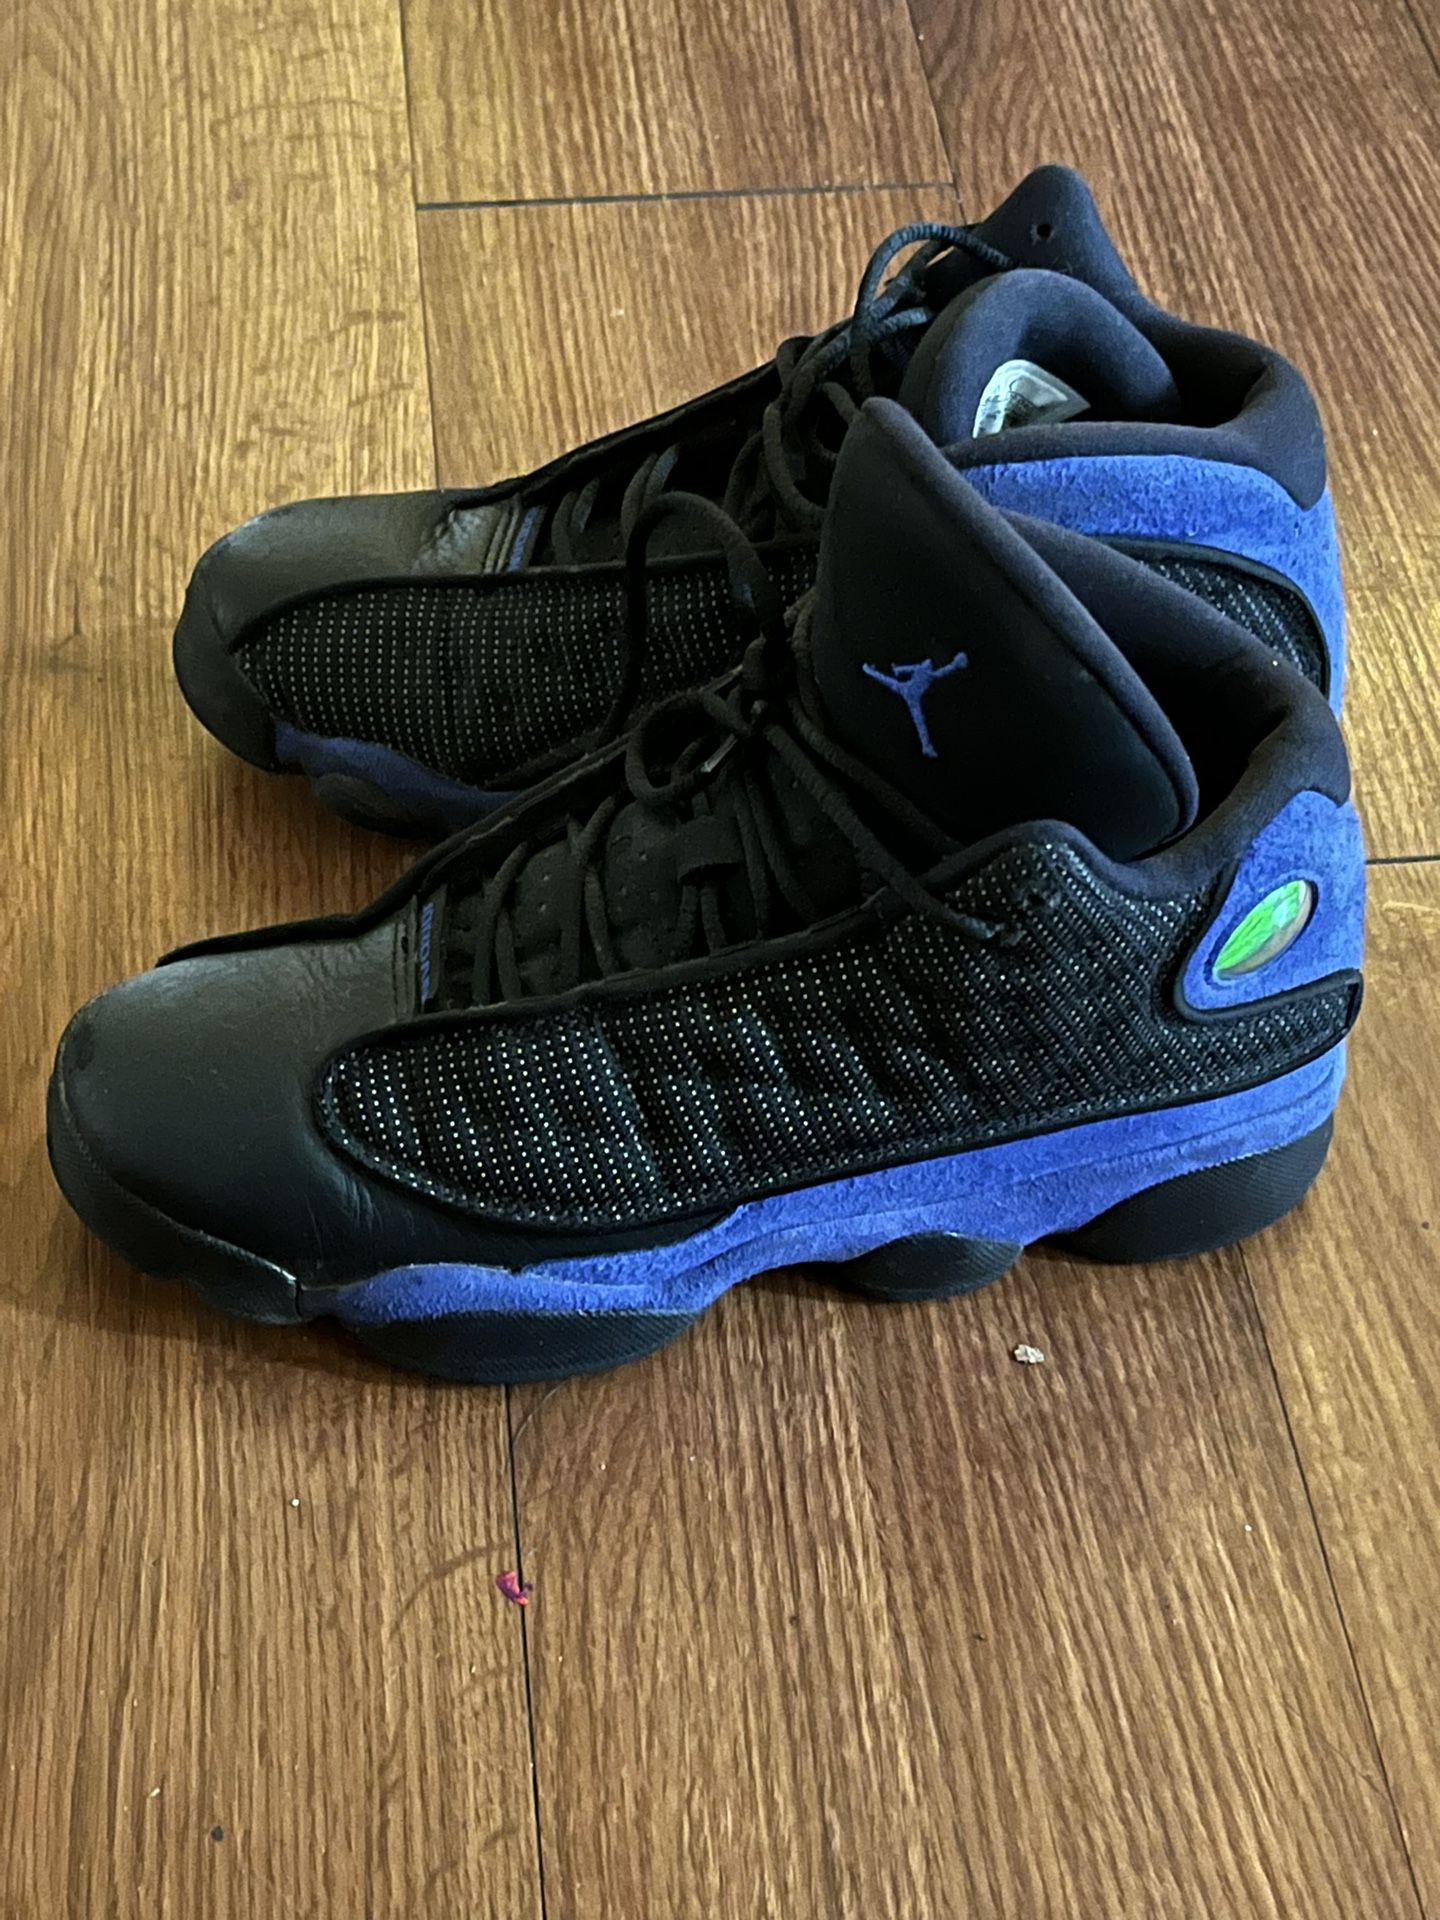 Jordan 13s Size 6.5.  $40 